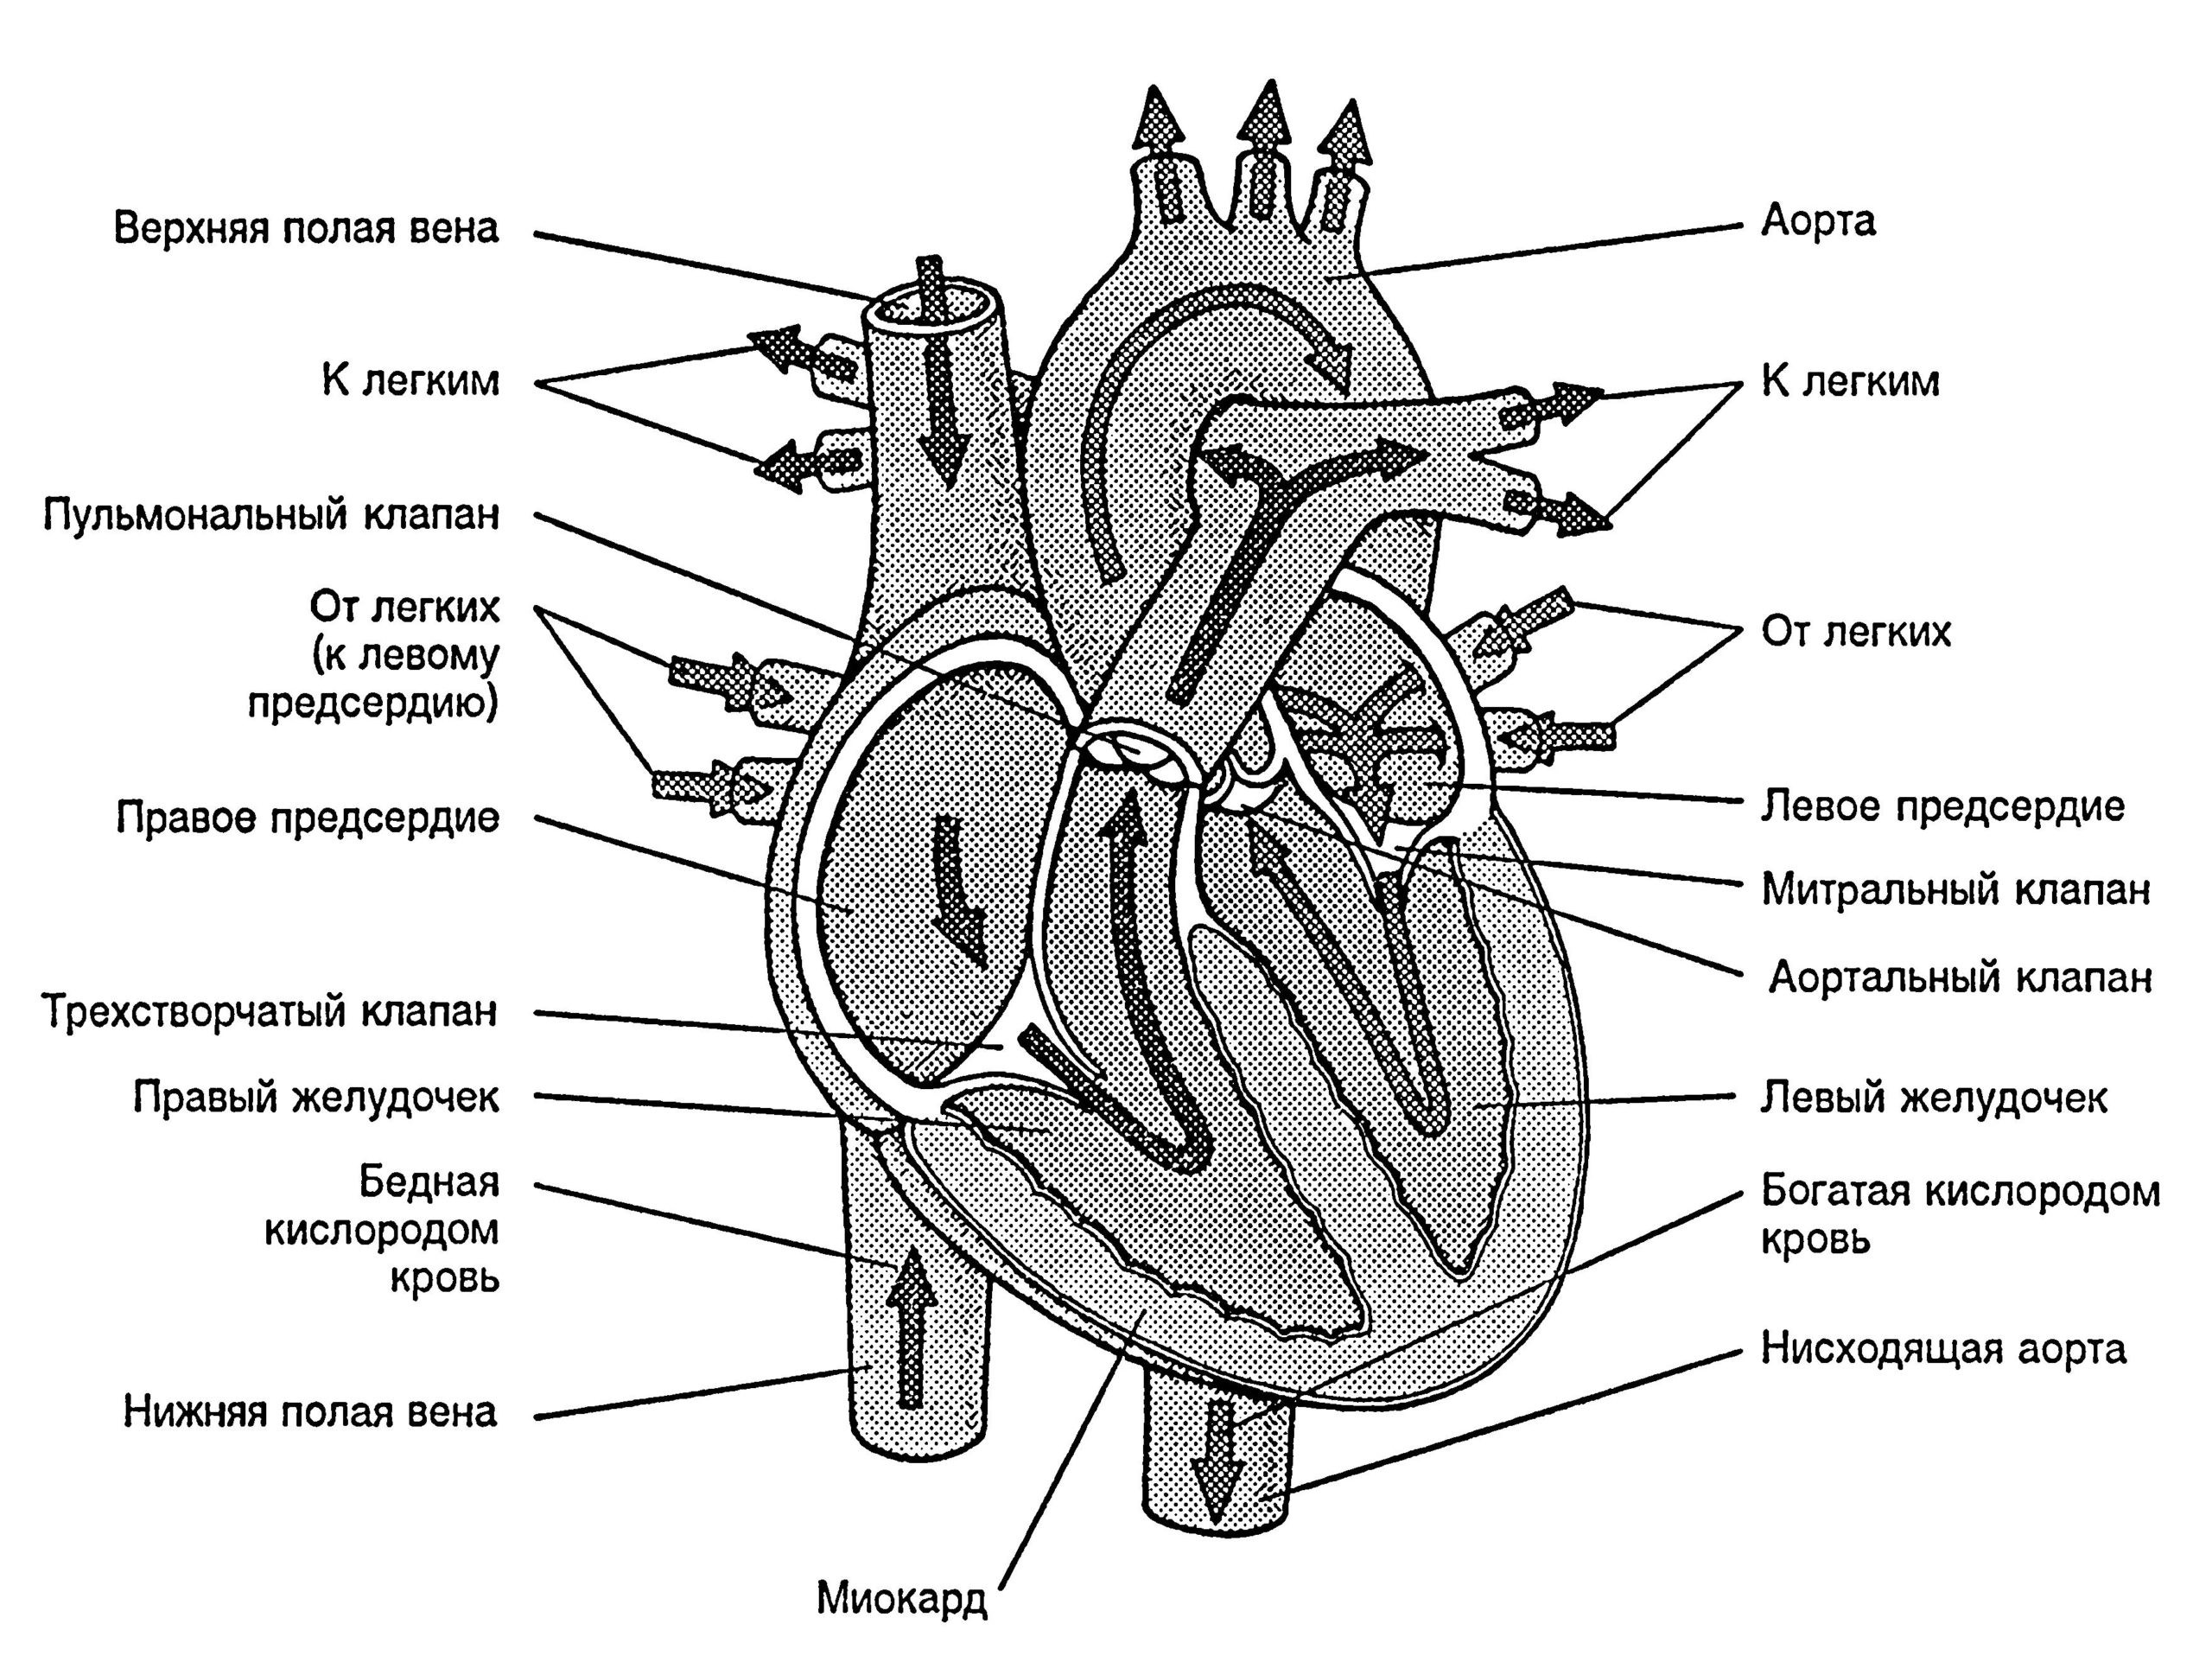 Две верхние полые вены. Верхняя полая Вена анатомия сердца. Нижняя полая Вена анатомия сердца. Строение сердца верхняя полая Вена. Верхняя полая Вена схема с обозначениями.